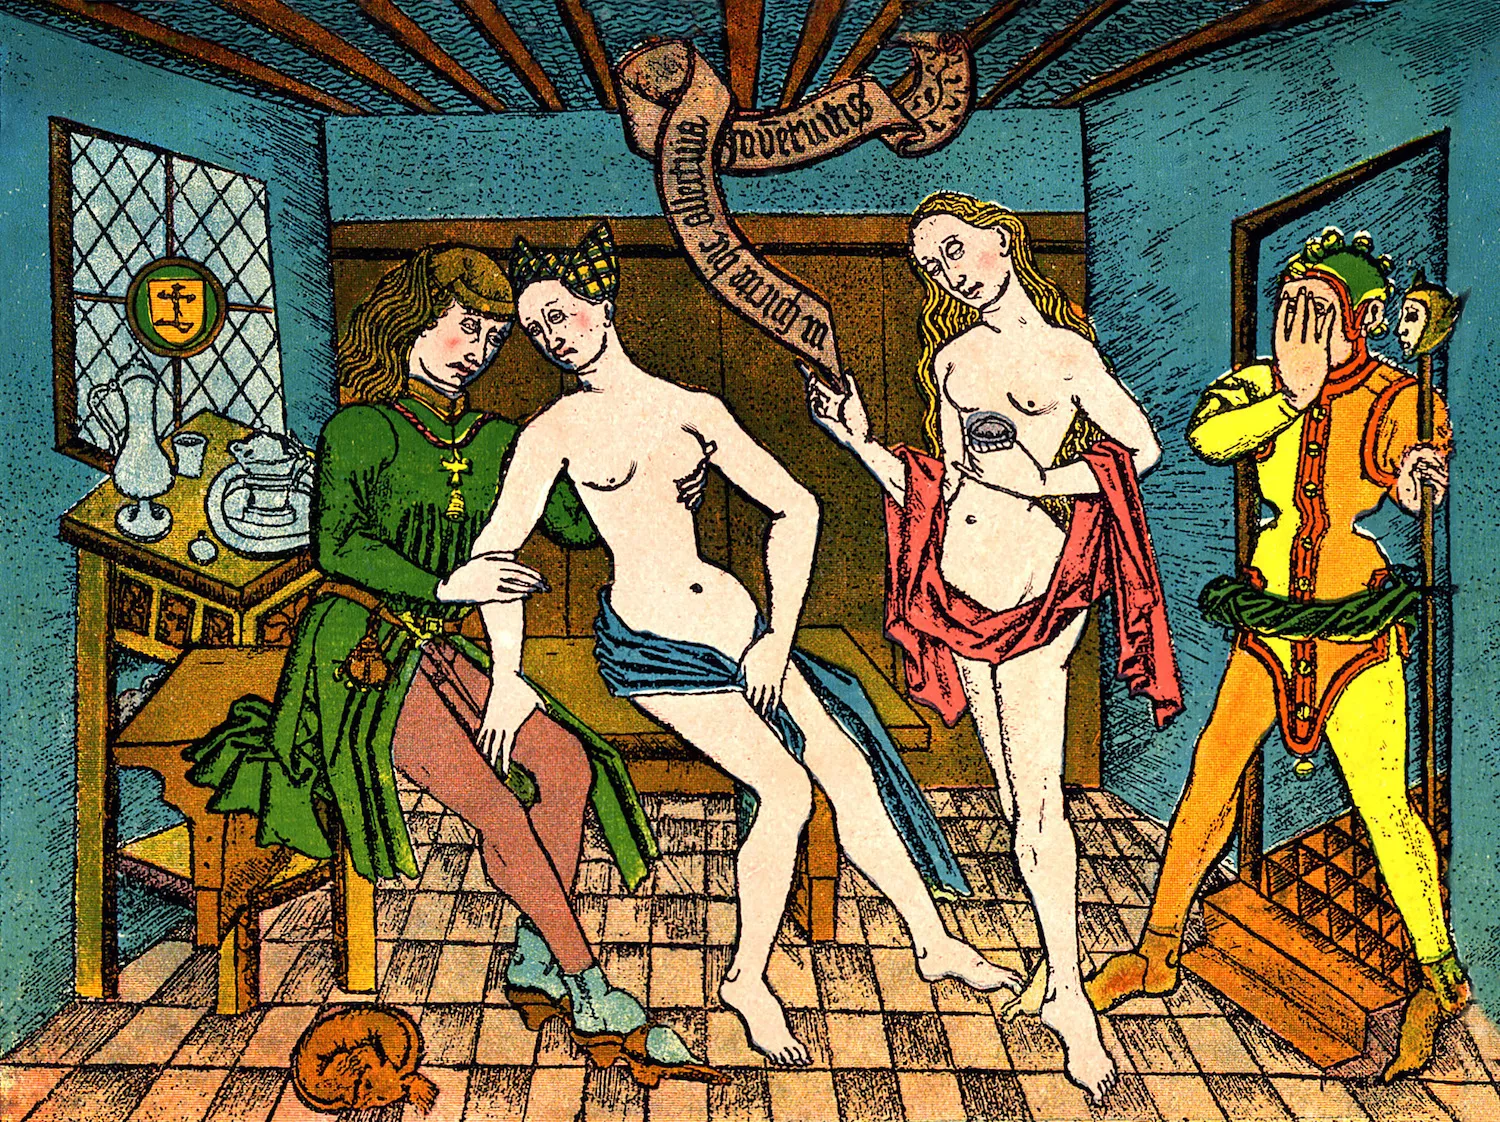 Gravat del segle XVI amb una escena en un prostíbul